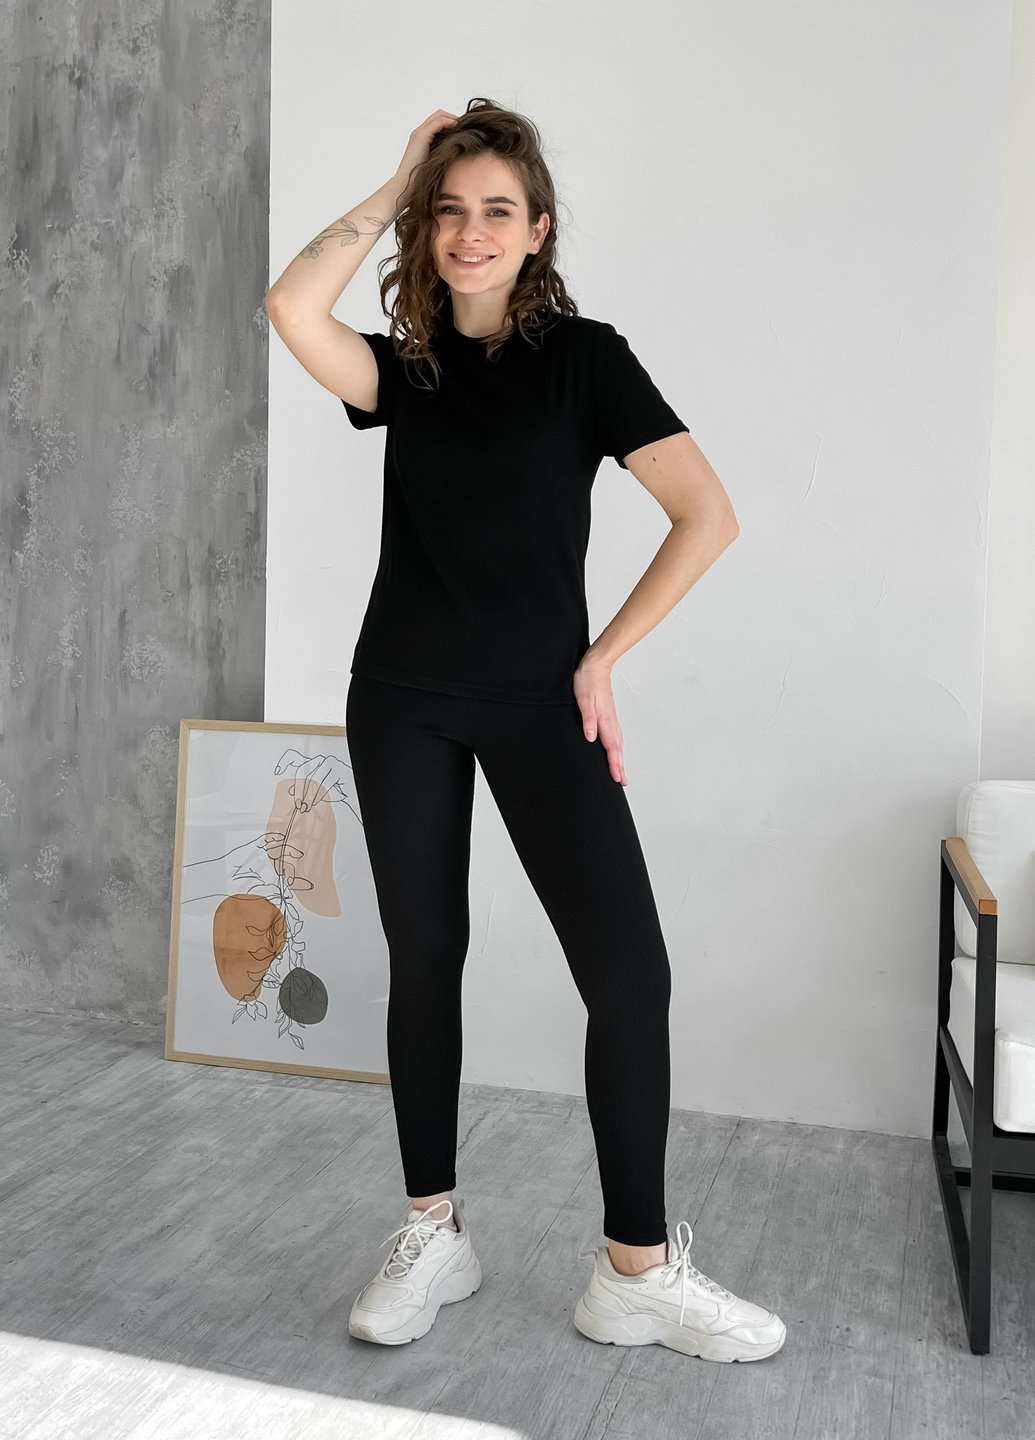 Купить Костюм женский в рубчик футболка с лосинами черный Merlini Сантино 100000501, размер XS-M (40-44) в интернет-магазине